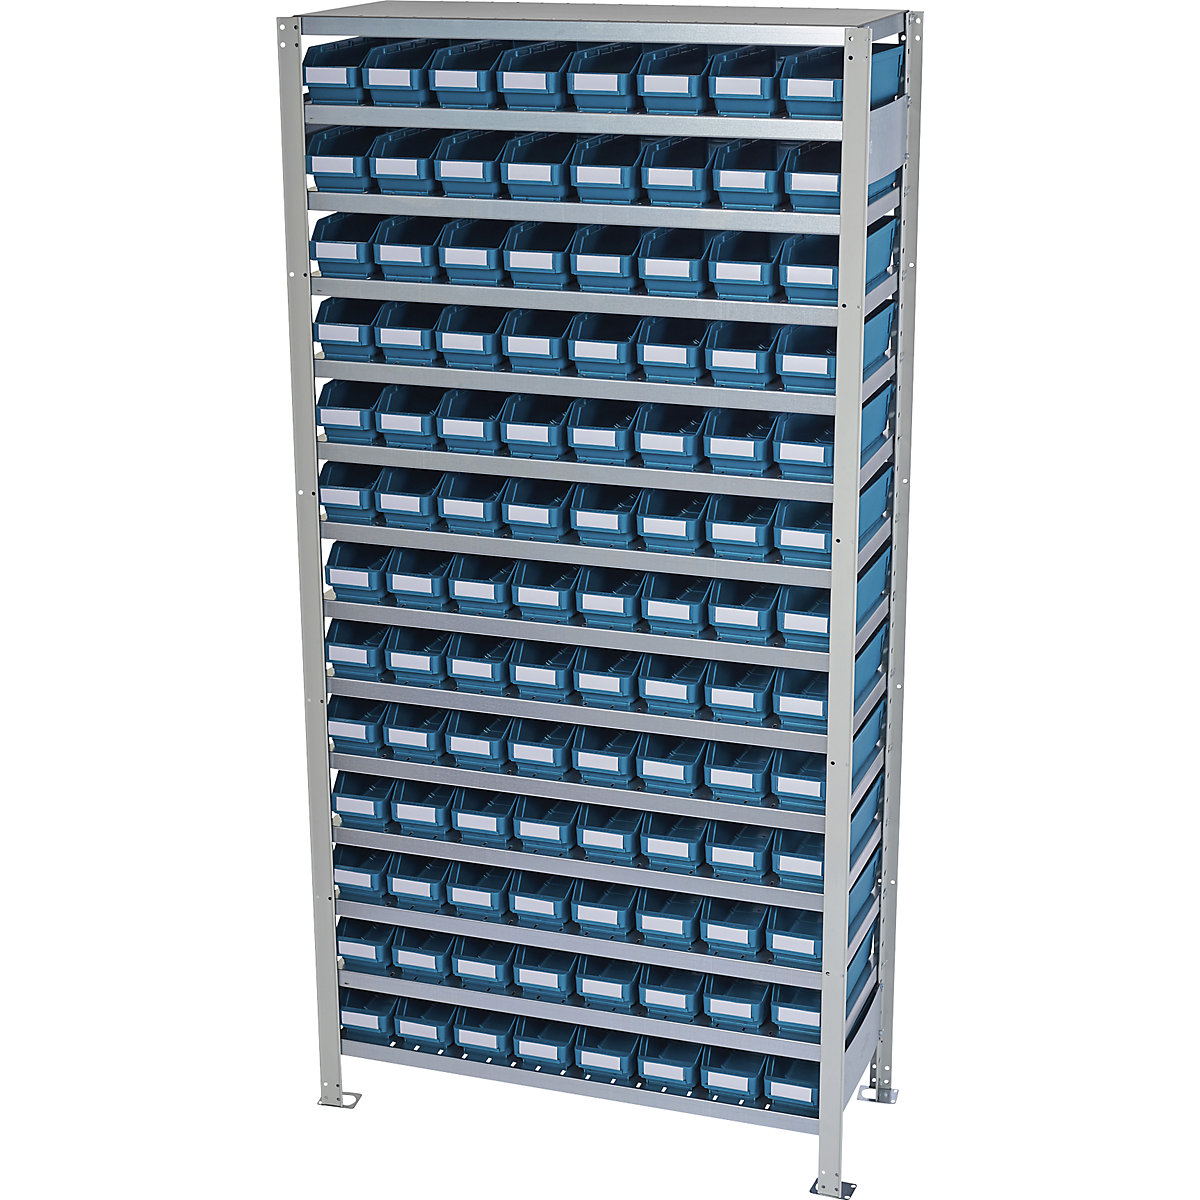 Estante de encaixar com caixas para estante – STEMO, altura da estante 2100 mm, estante básica, profundidade 300 mm, 104 caixas verdes-44